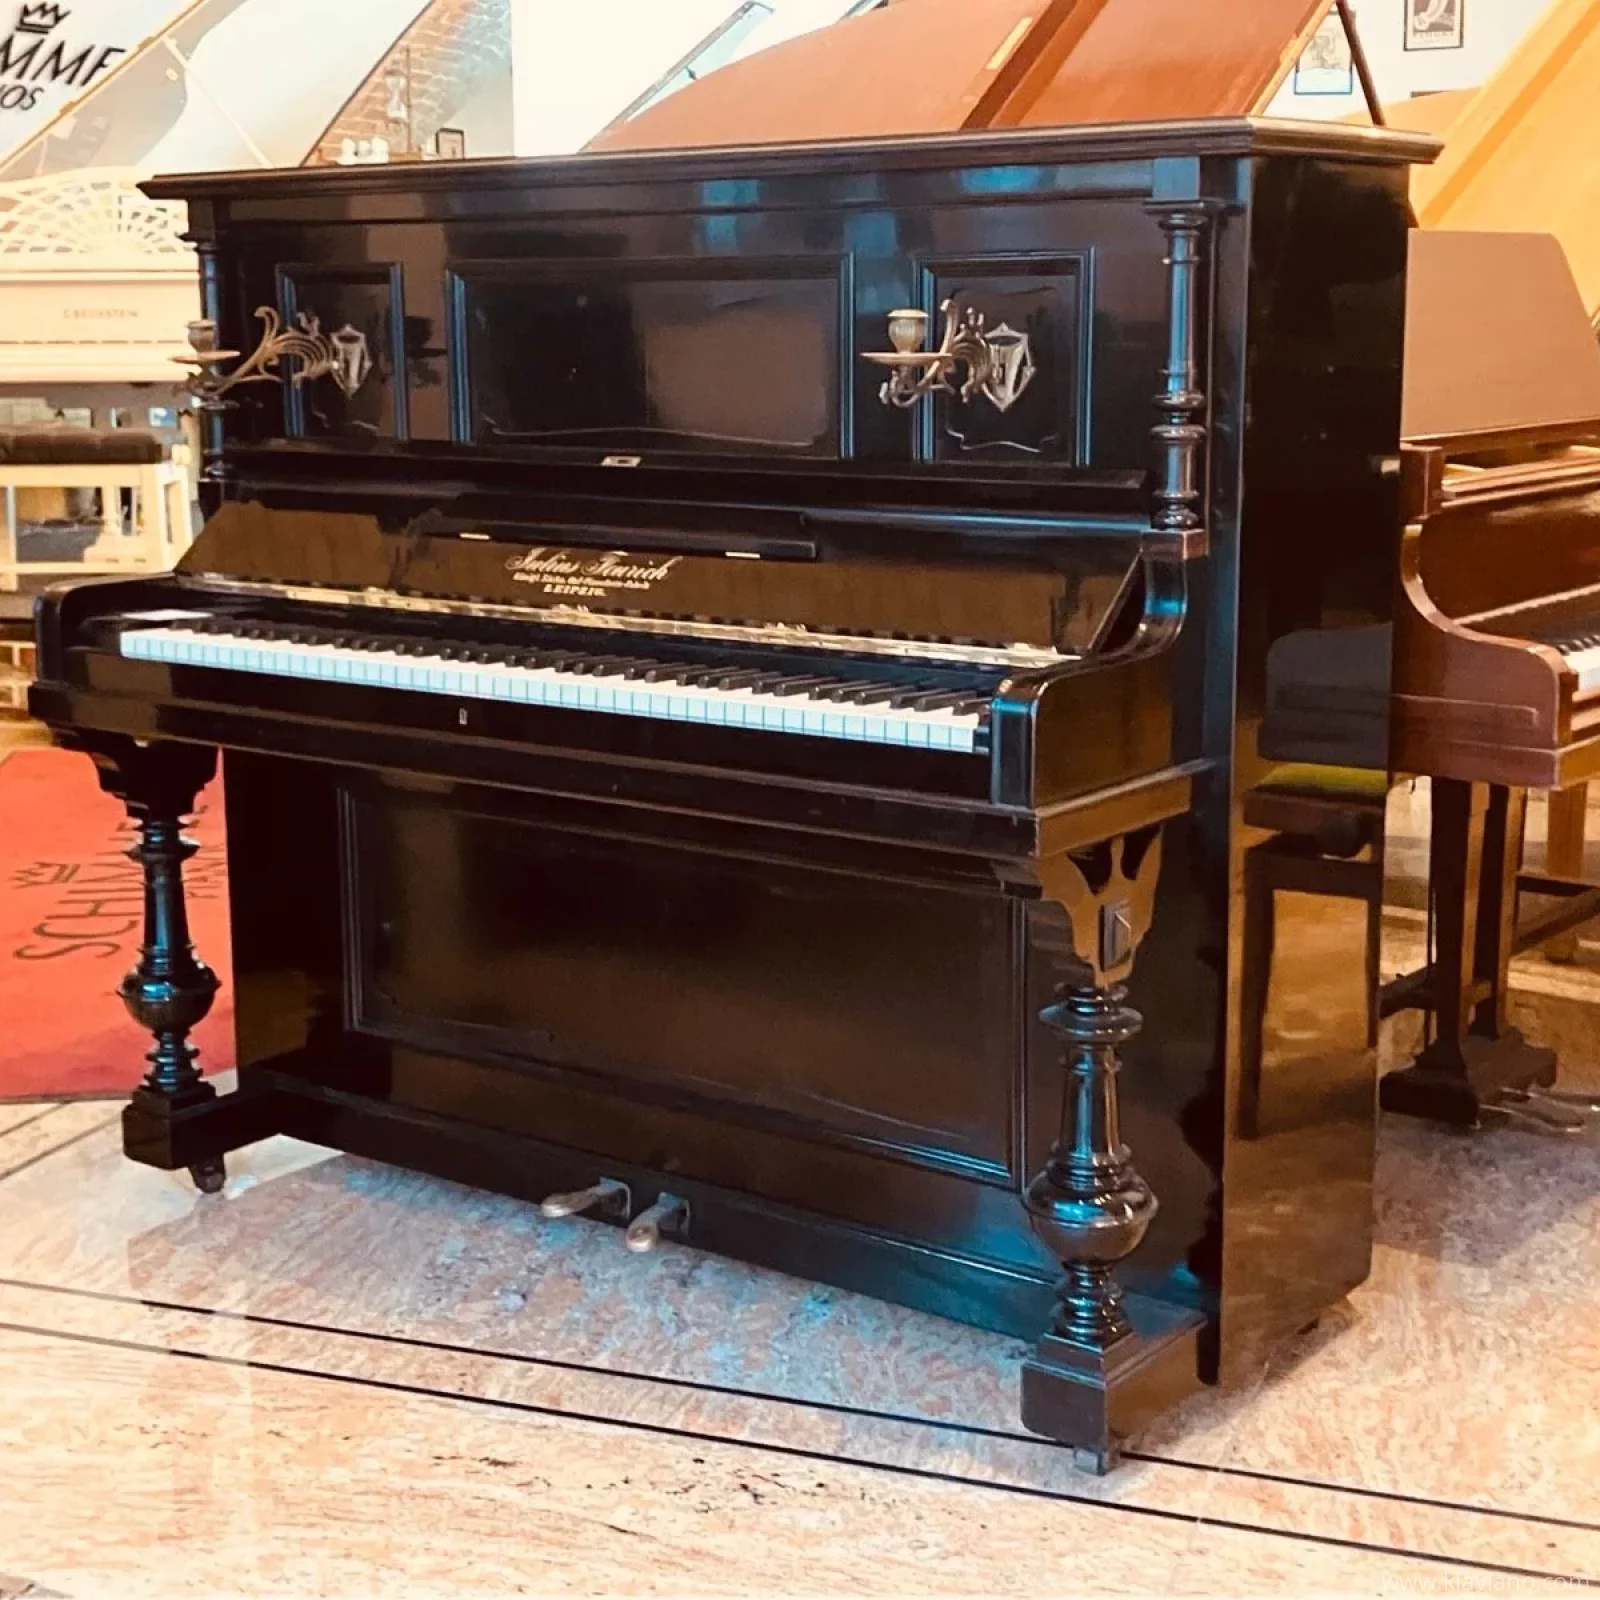 FEUrICH Klavier Modell 125 restauriert